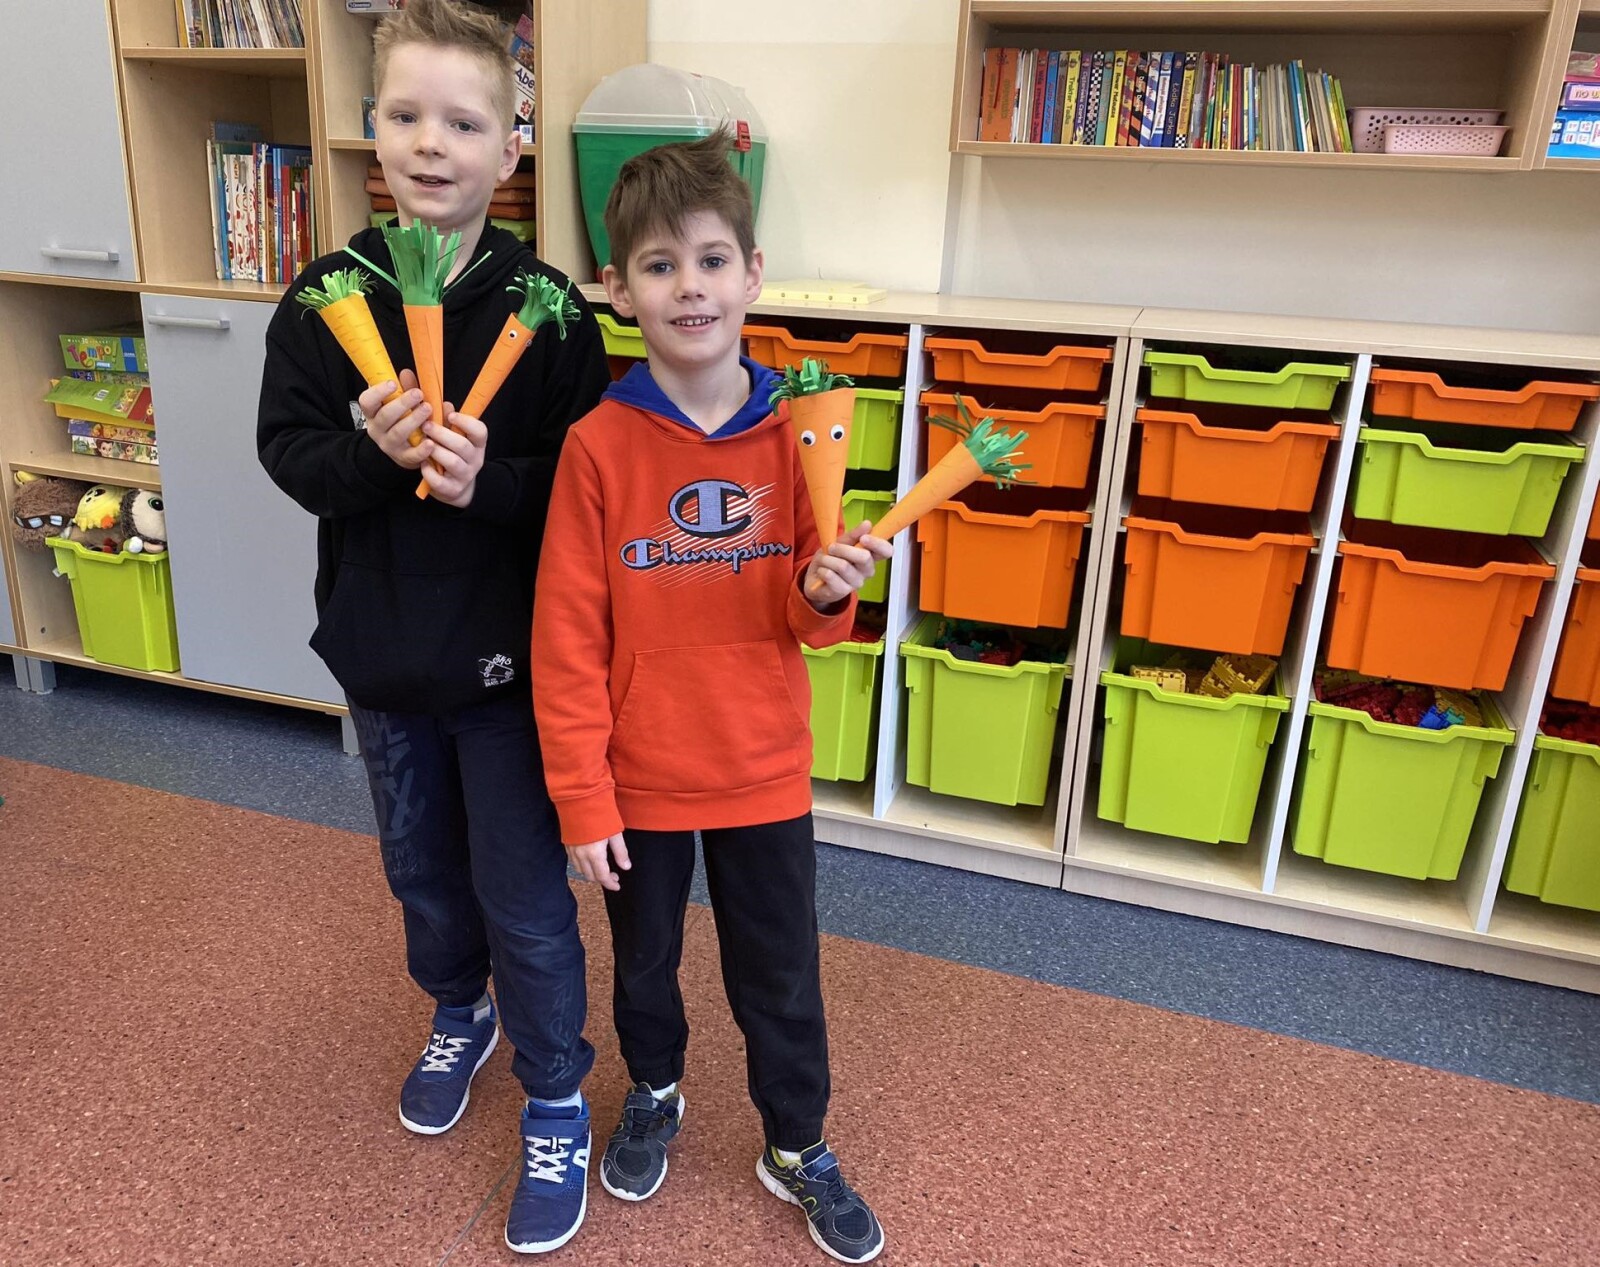 Dwaj chłopcy trzymają w dłoniach papierowe  marchewki wykonane w świetlicy podczas zajęć plastycznych z okazji Dnia Marchewki.